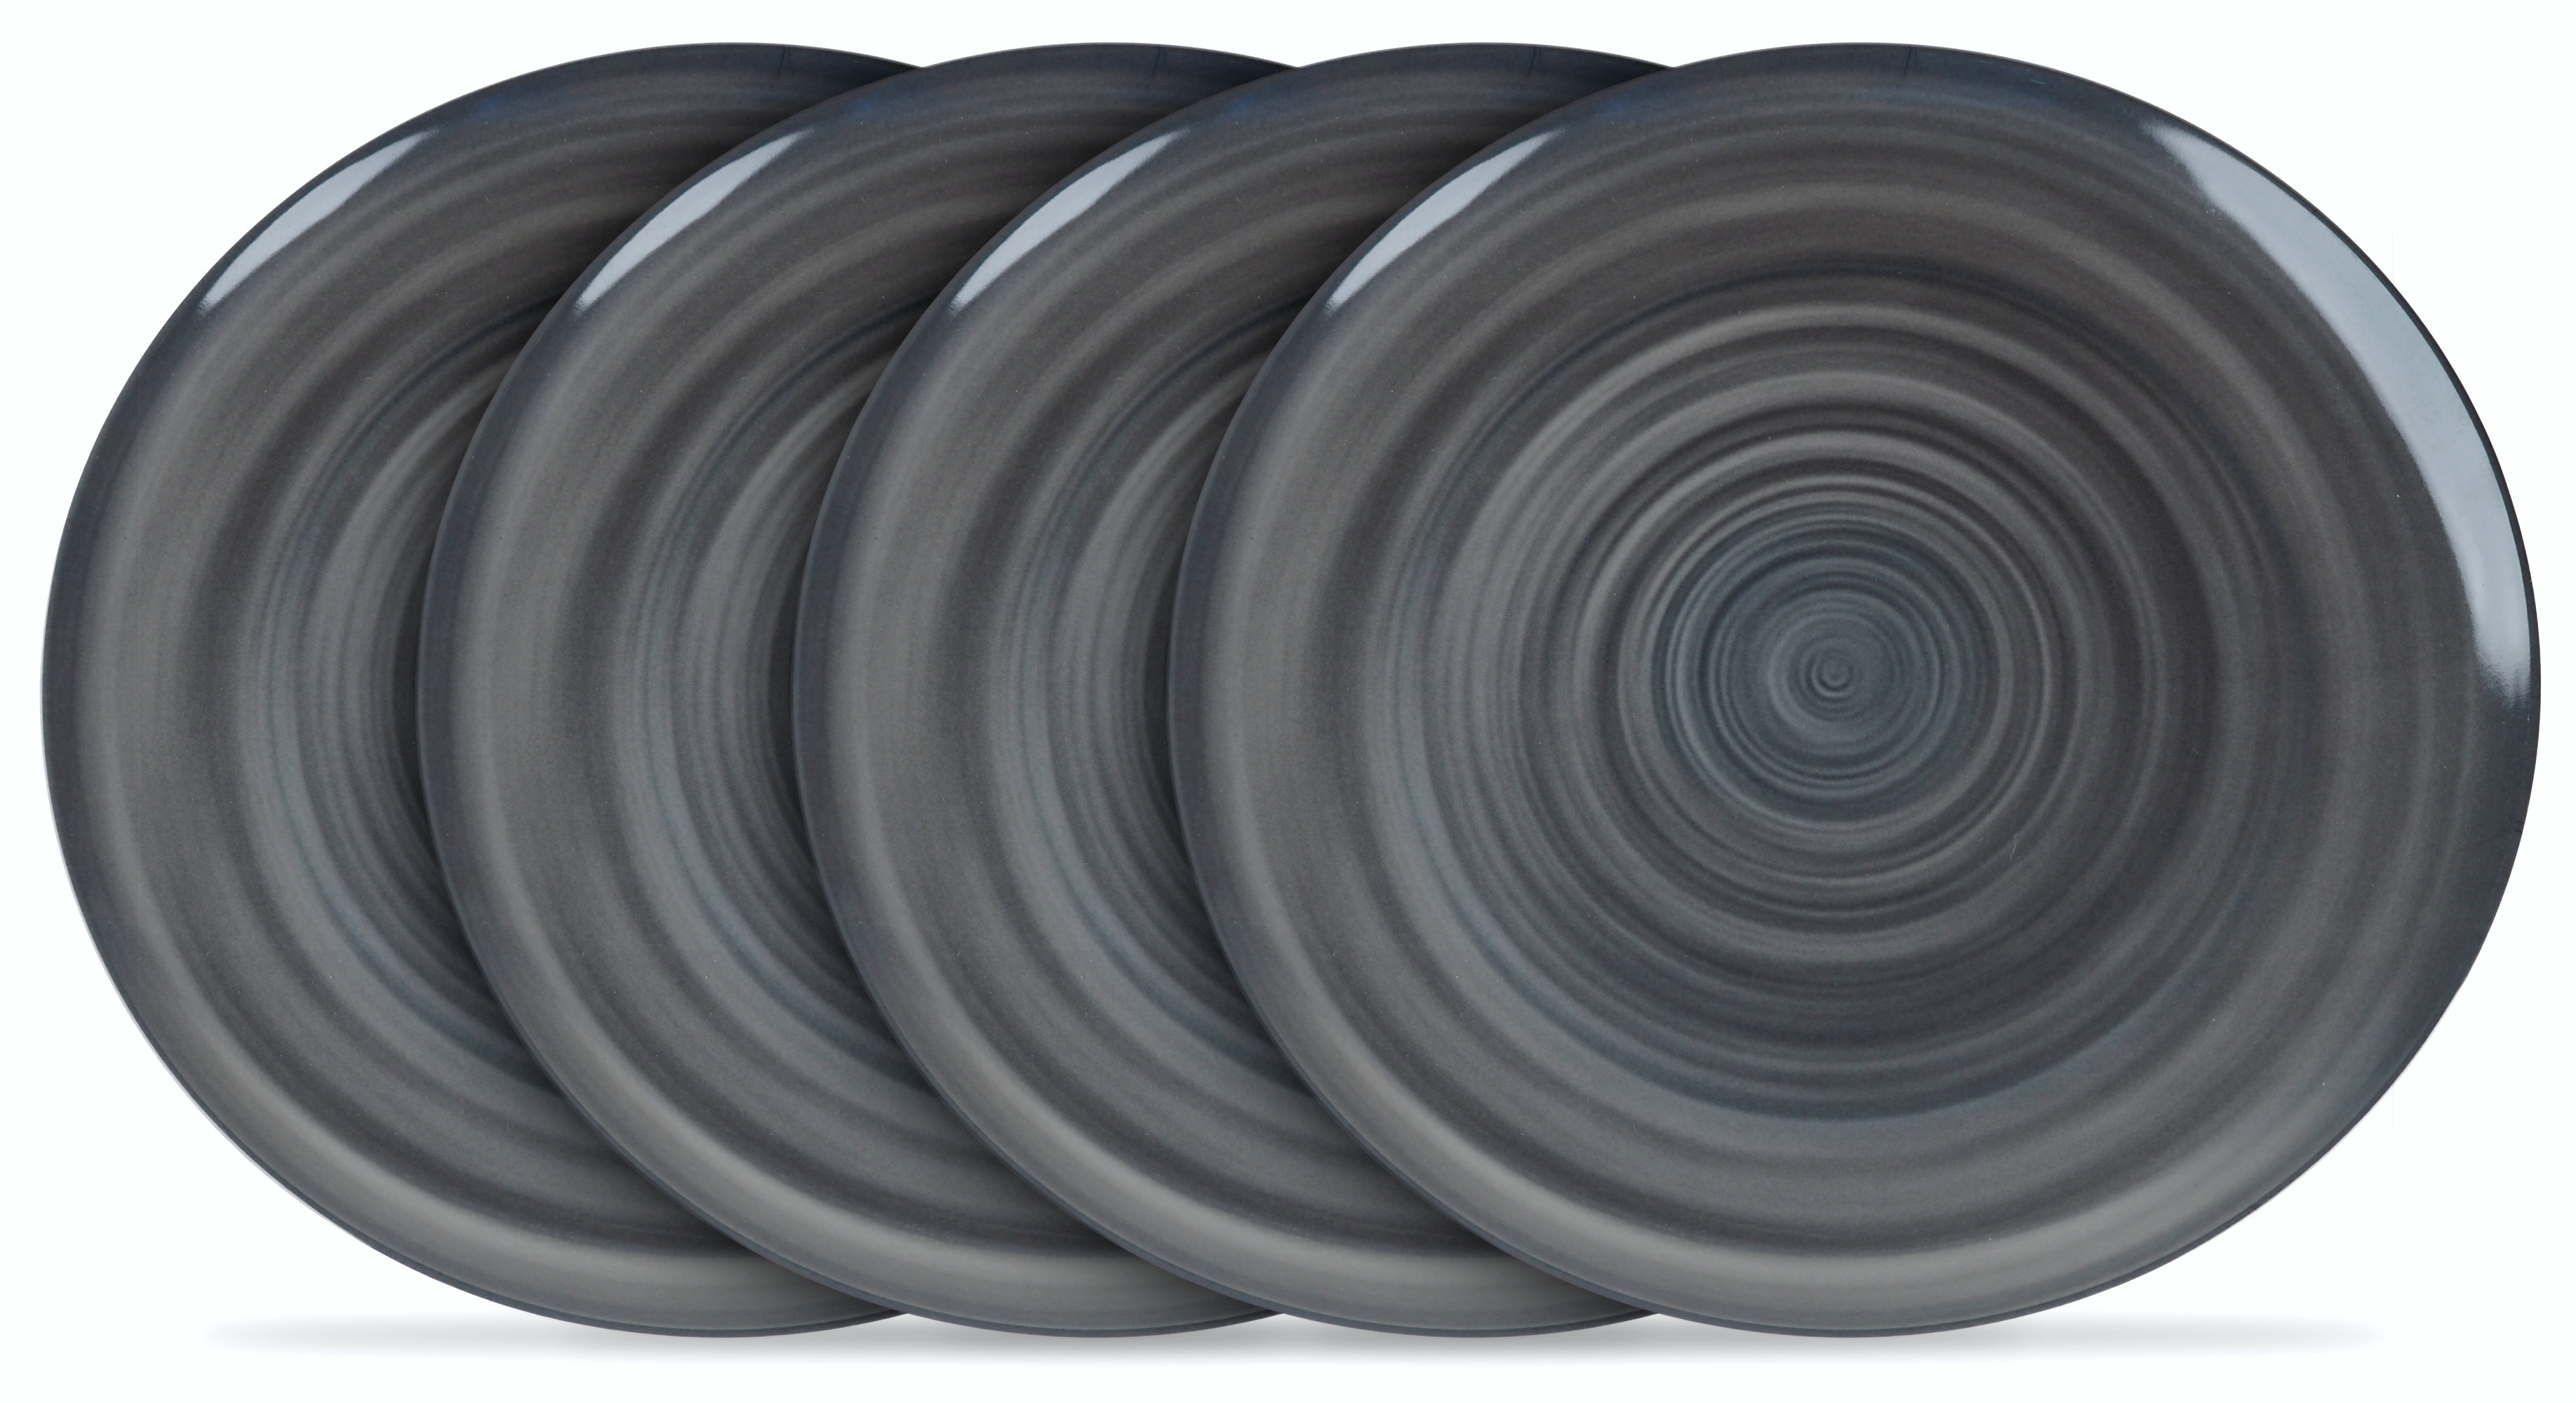 Melamine Plastic Dinner Plates -  Grey Swirl Design Plate - Set of 4